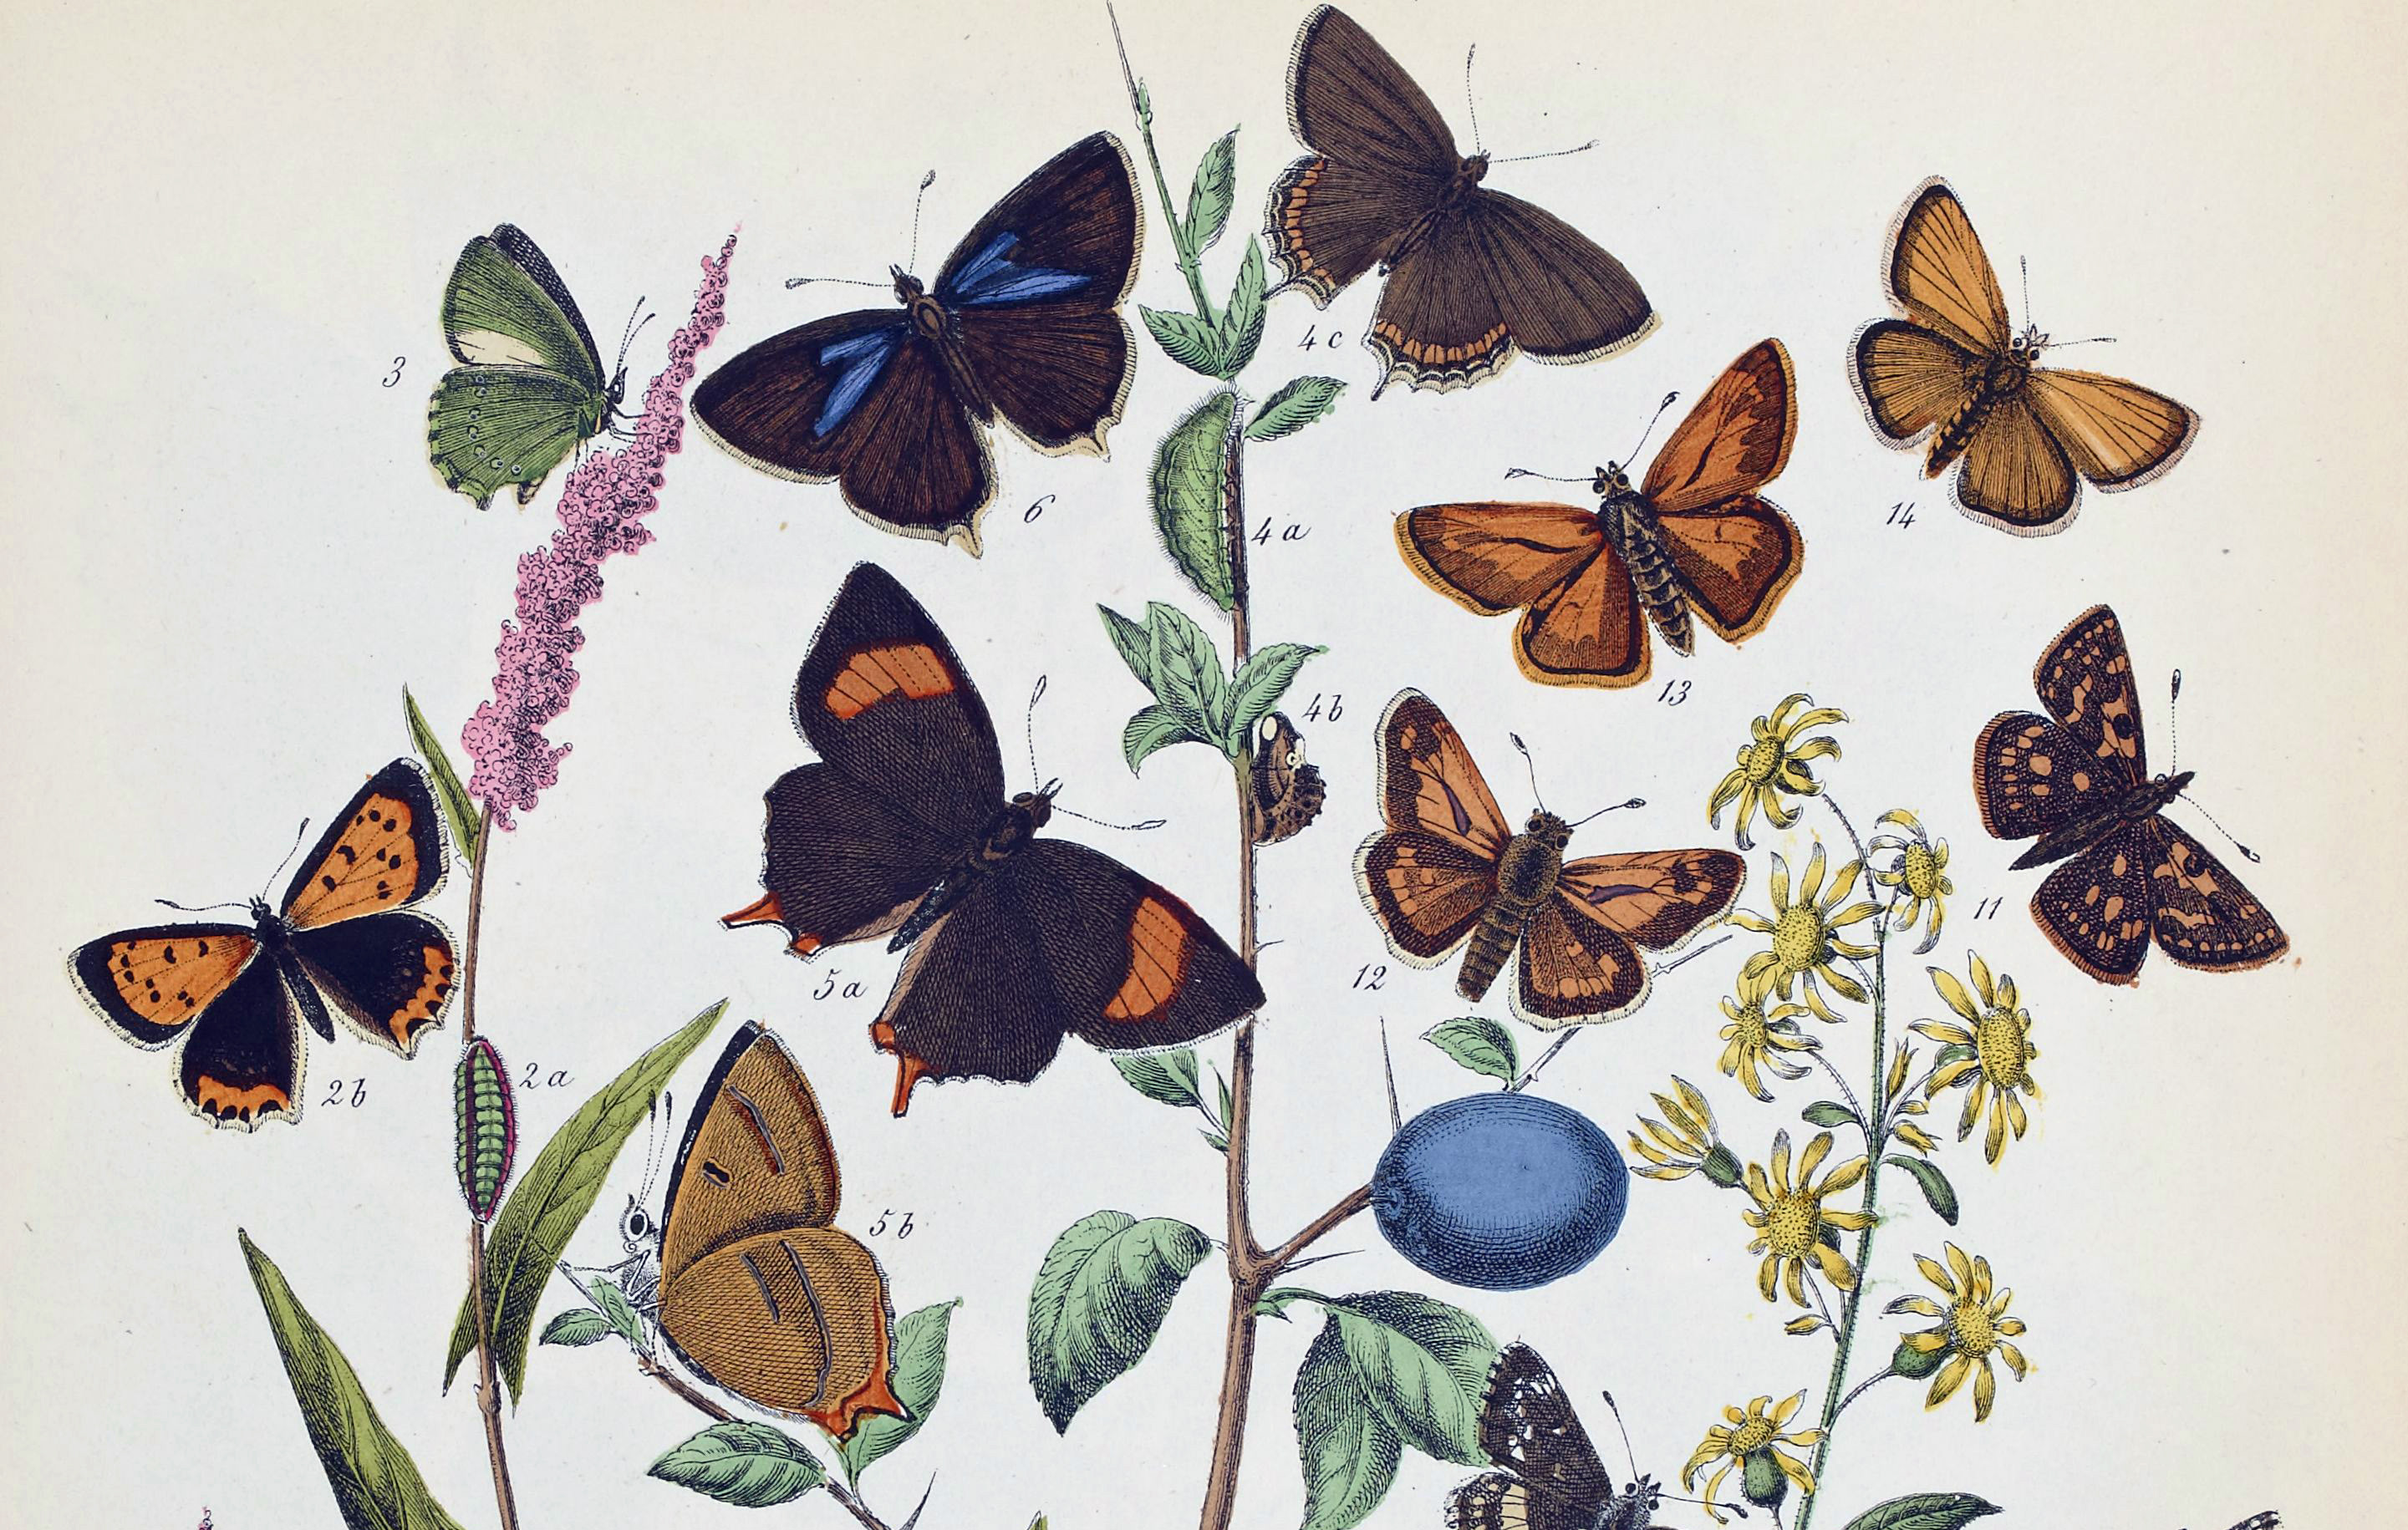 Le monde des papillons, promenade à travers champs, M. Sand, 1867